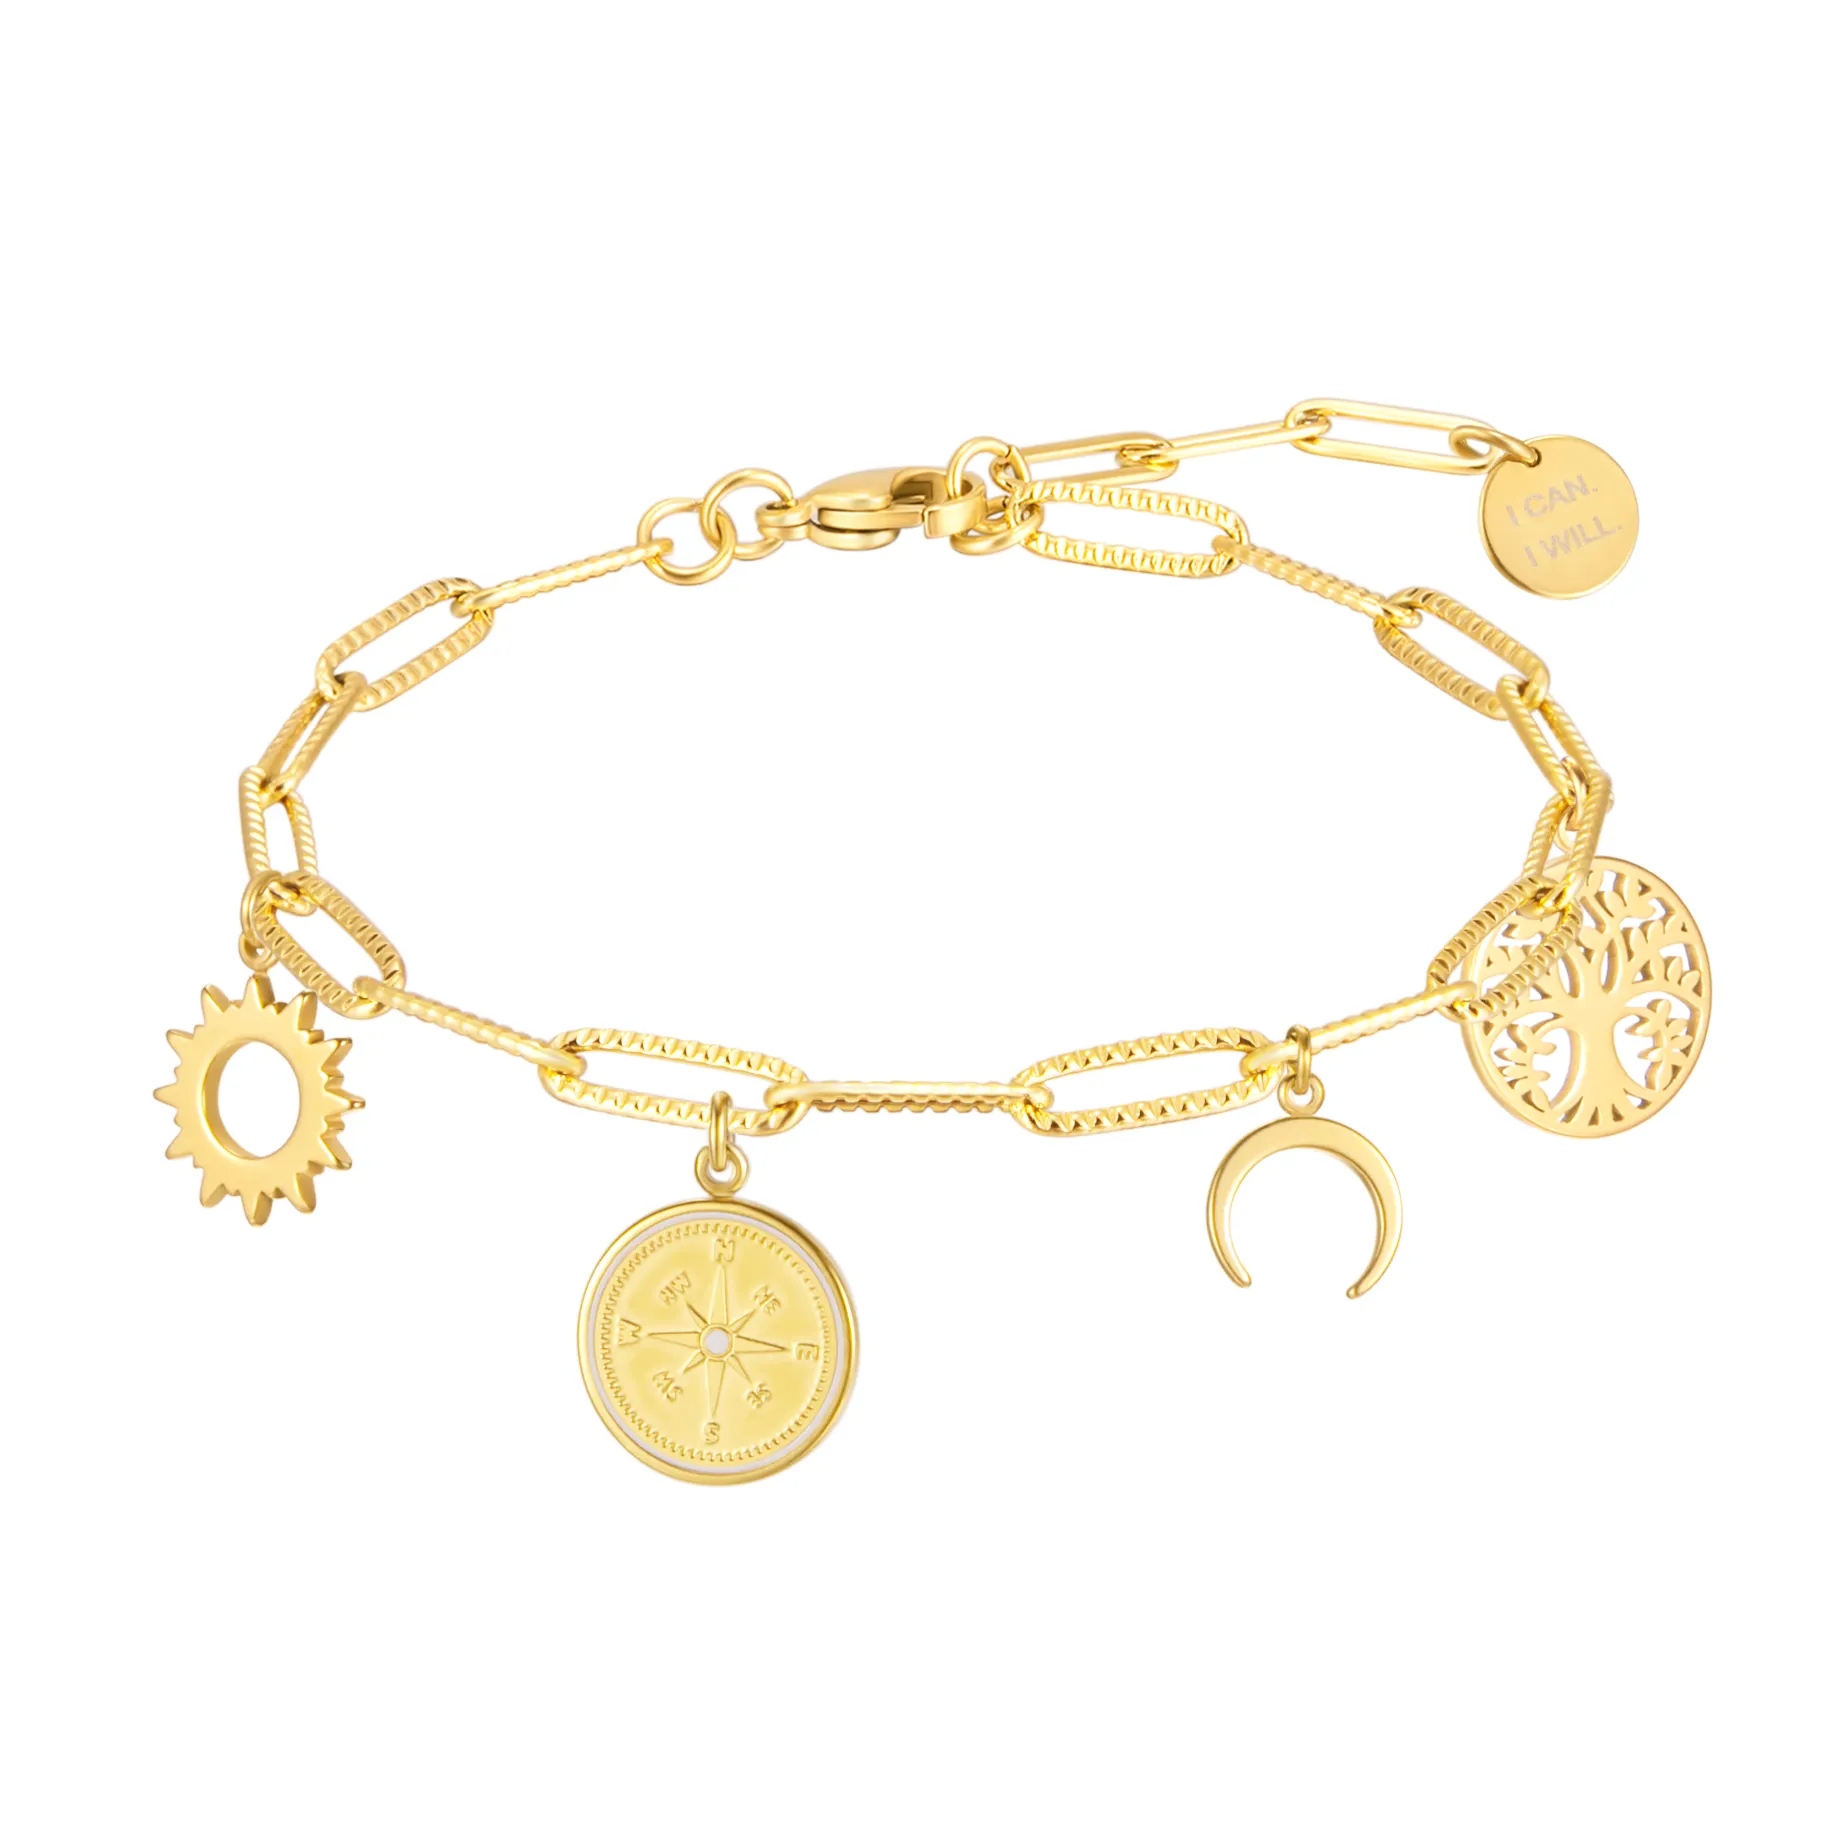 Oro-placcato in acciaio inossidabile delle signore del braccialetto di fascino del braccialetto con lunghezza regolabile